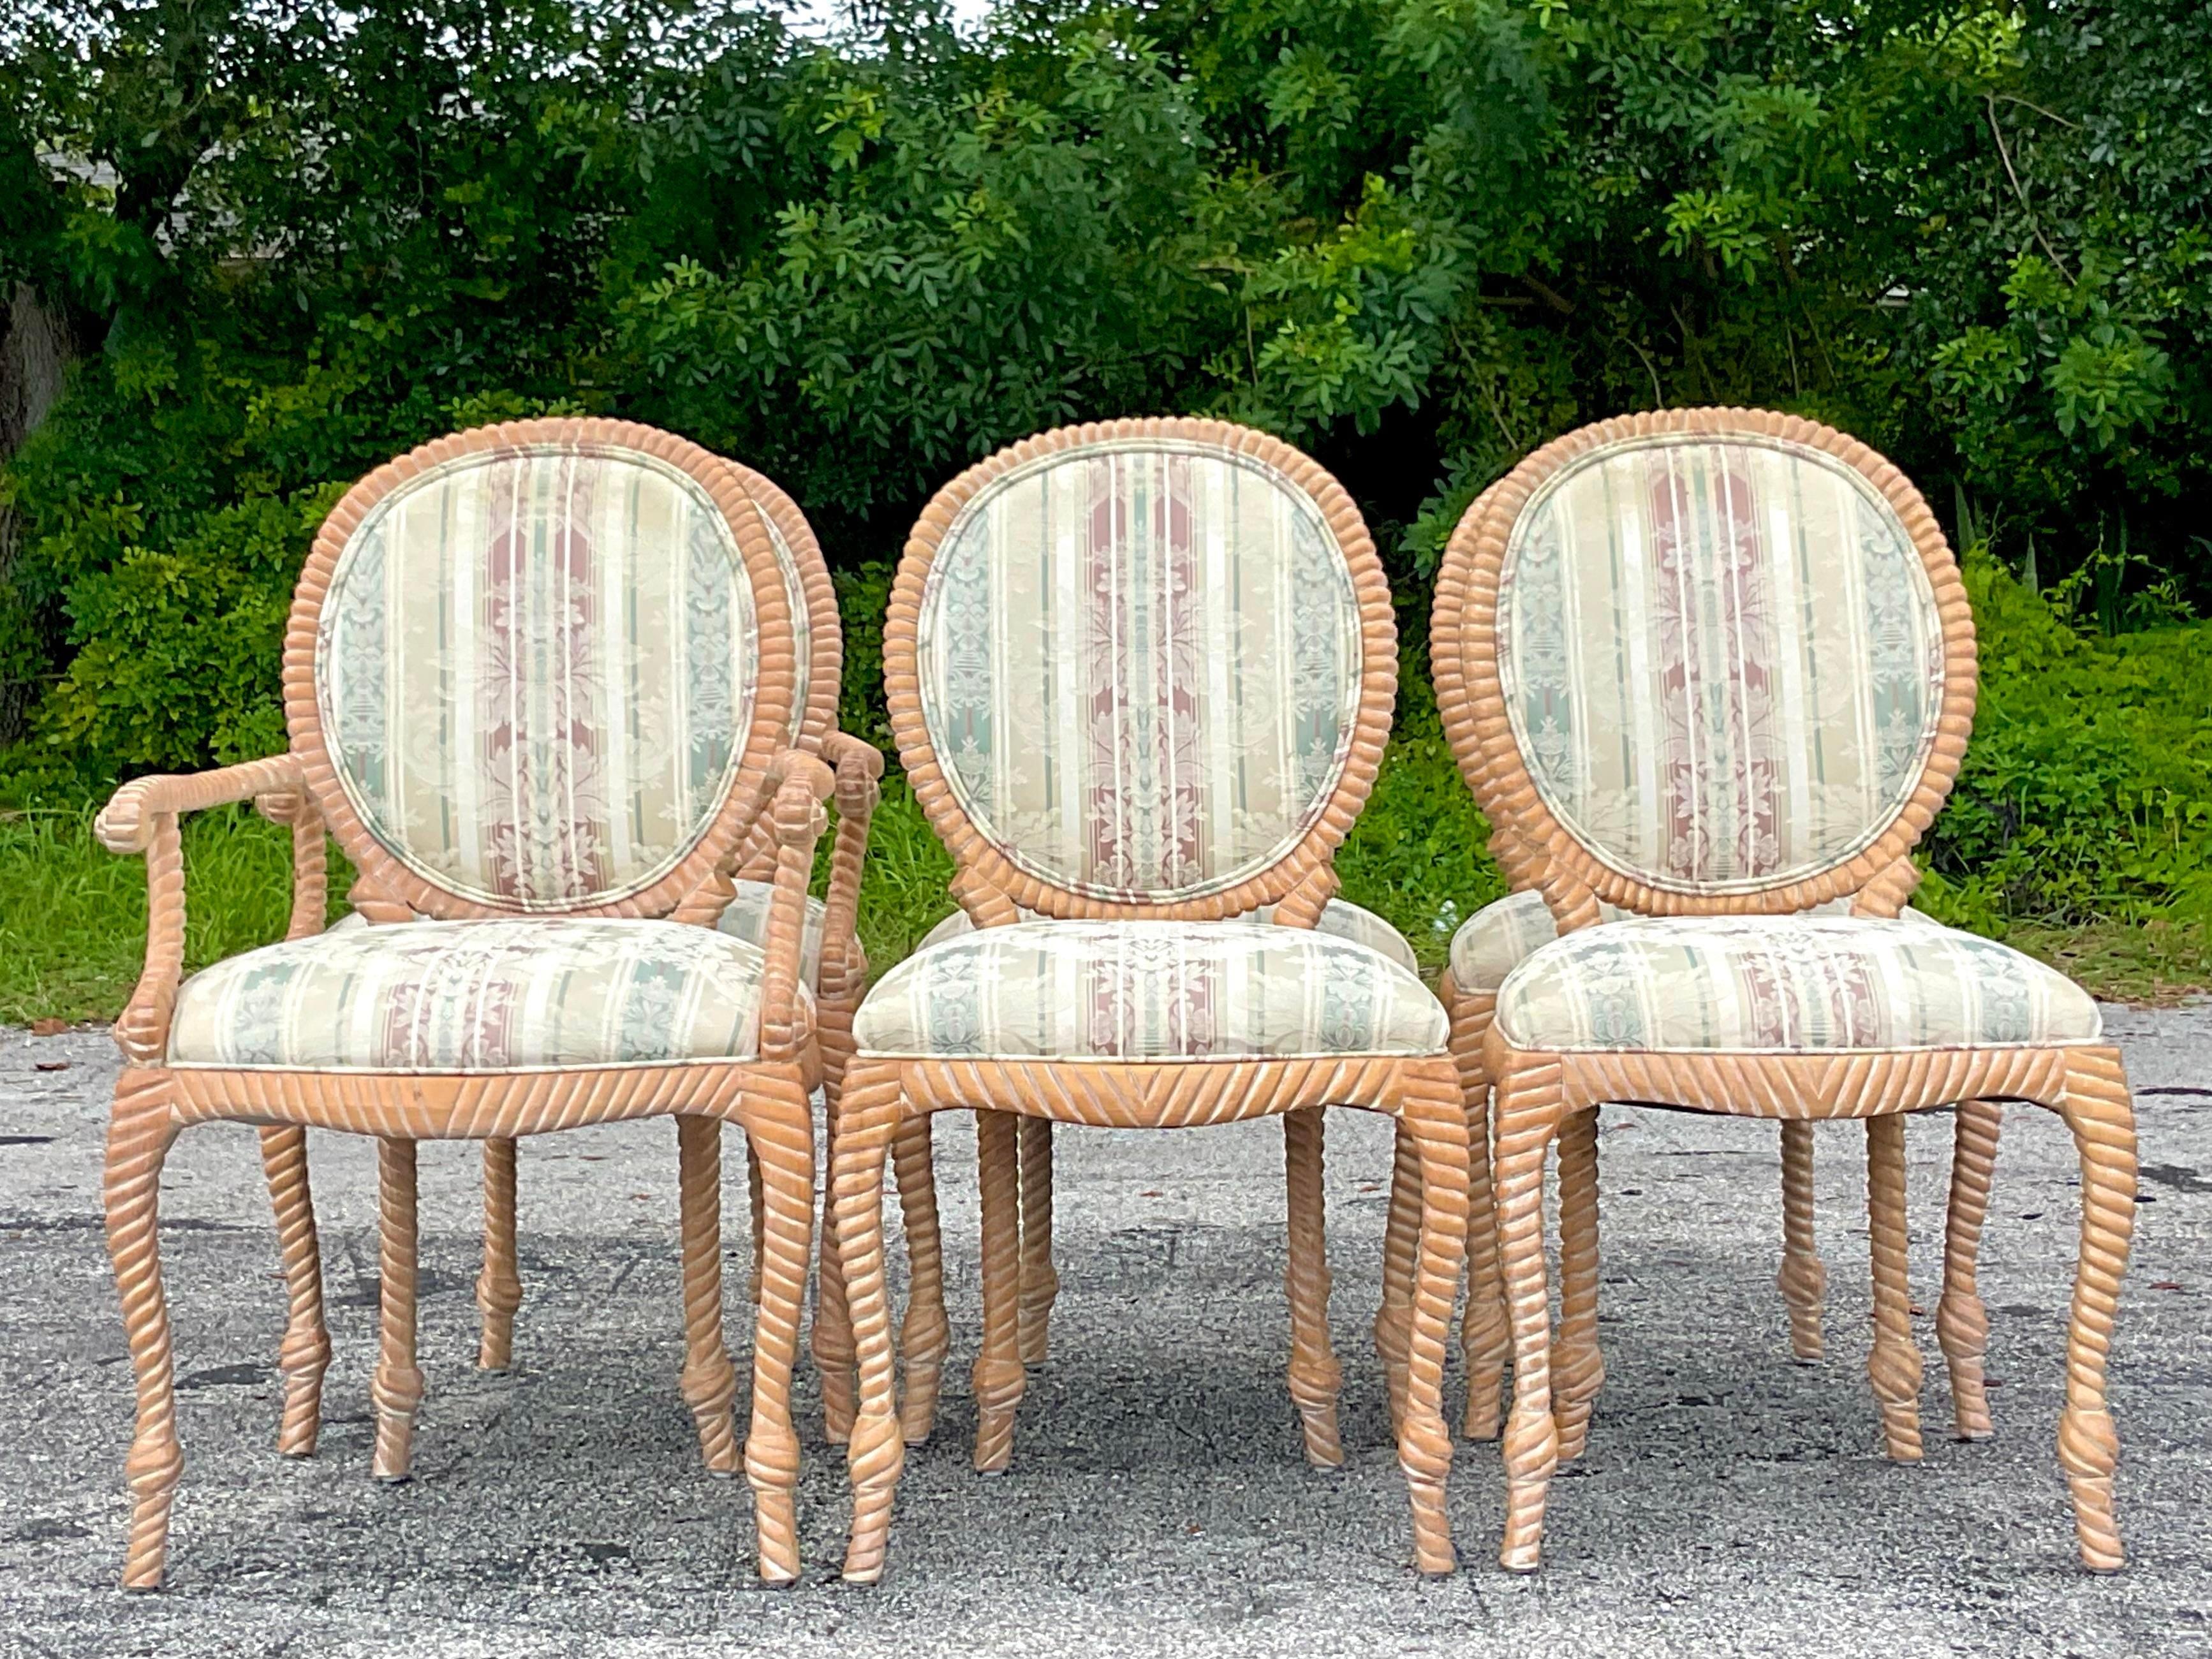 Ein fabelhaftes Set von 6 Vintage Boho Esszimmerstühlen. Schönes geschnitztes Holzdesign in einem hellen Holz. Zwei Sessel und vier Seiten. Erworben aus einem Nachlass in Palm Beach.

Sessel 24 breit.